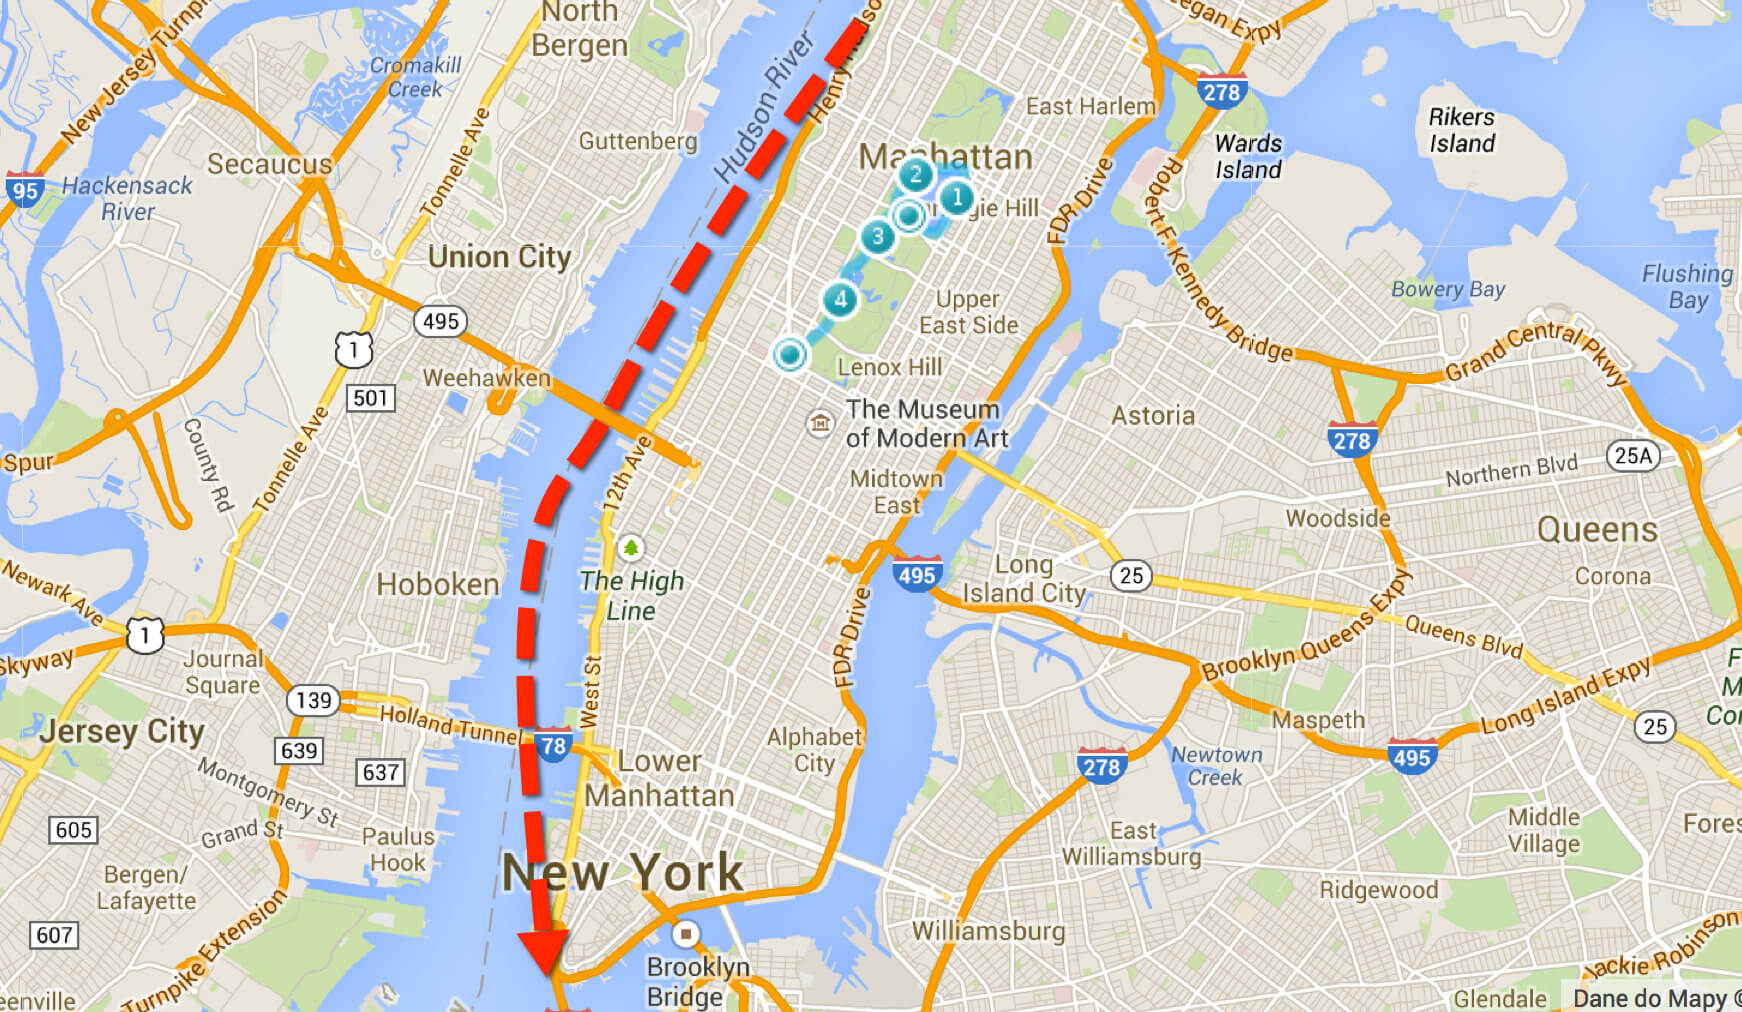 A tu na czerwono trasa dzisiejszego biegu. Początek na granicy Manhattanu z Harlemem. Koniec – czubek wyspy.